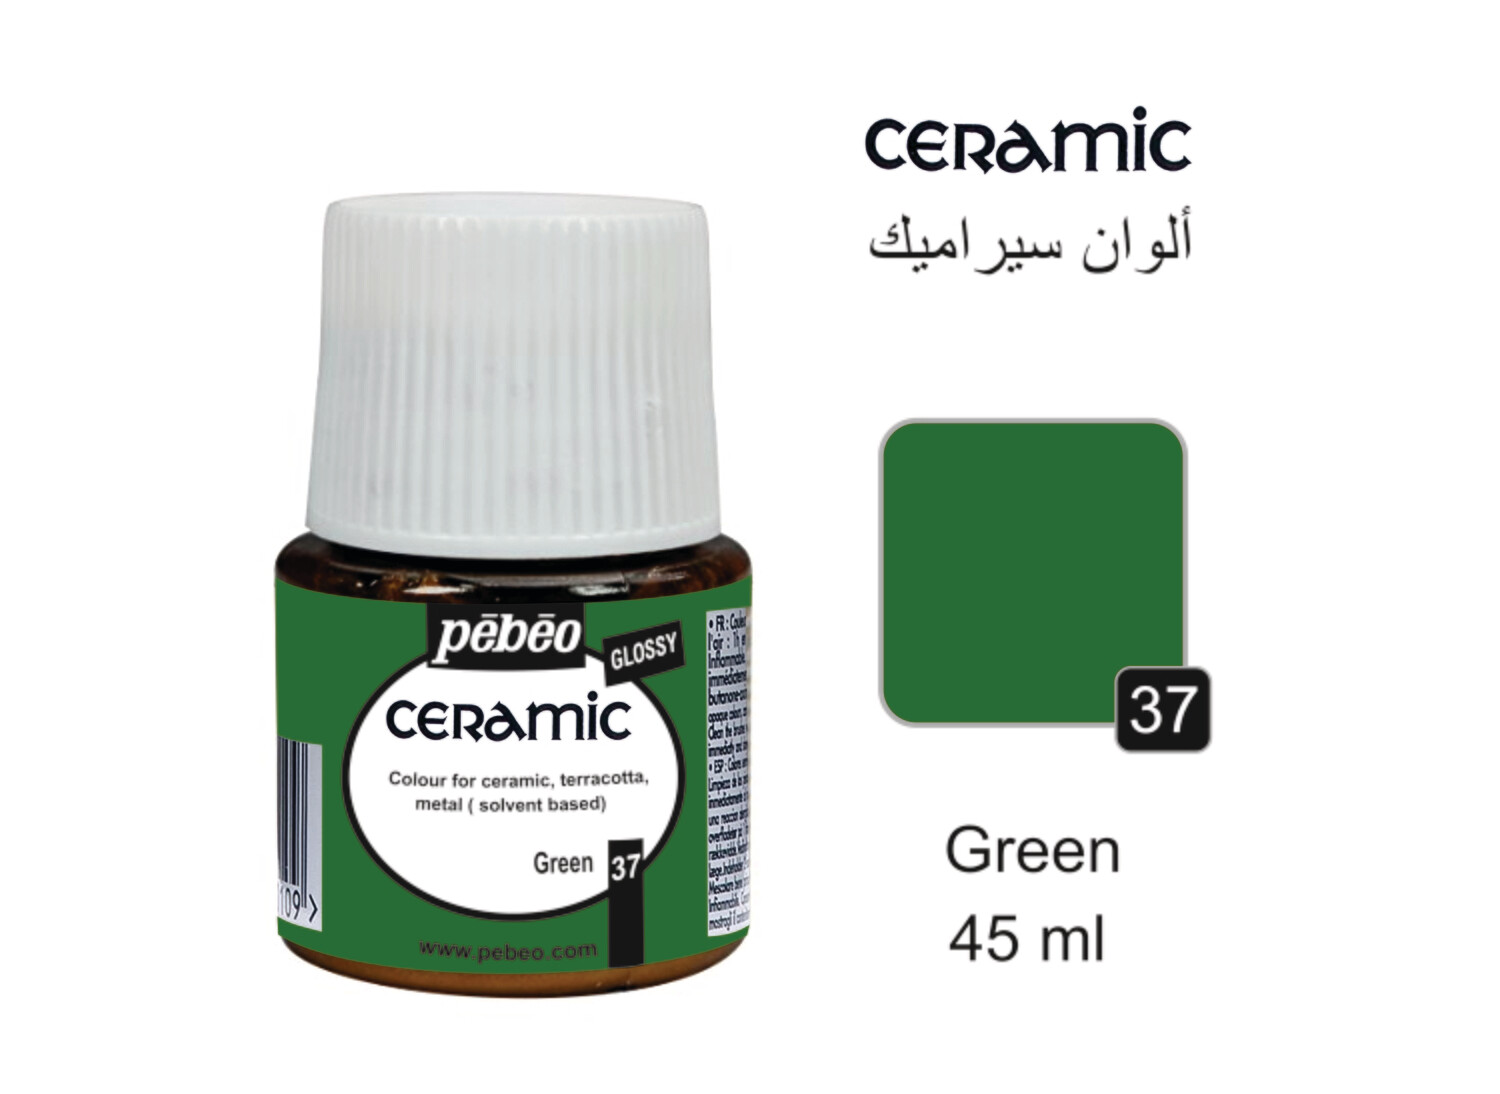 Ceramic colors green, 45 ml No. 37